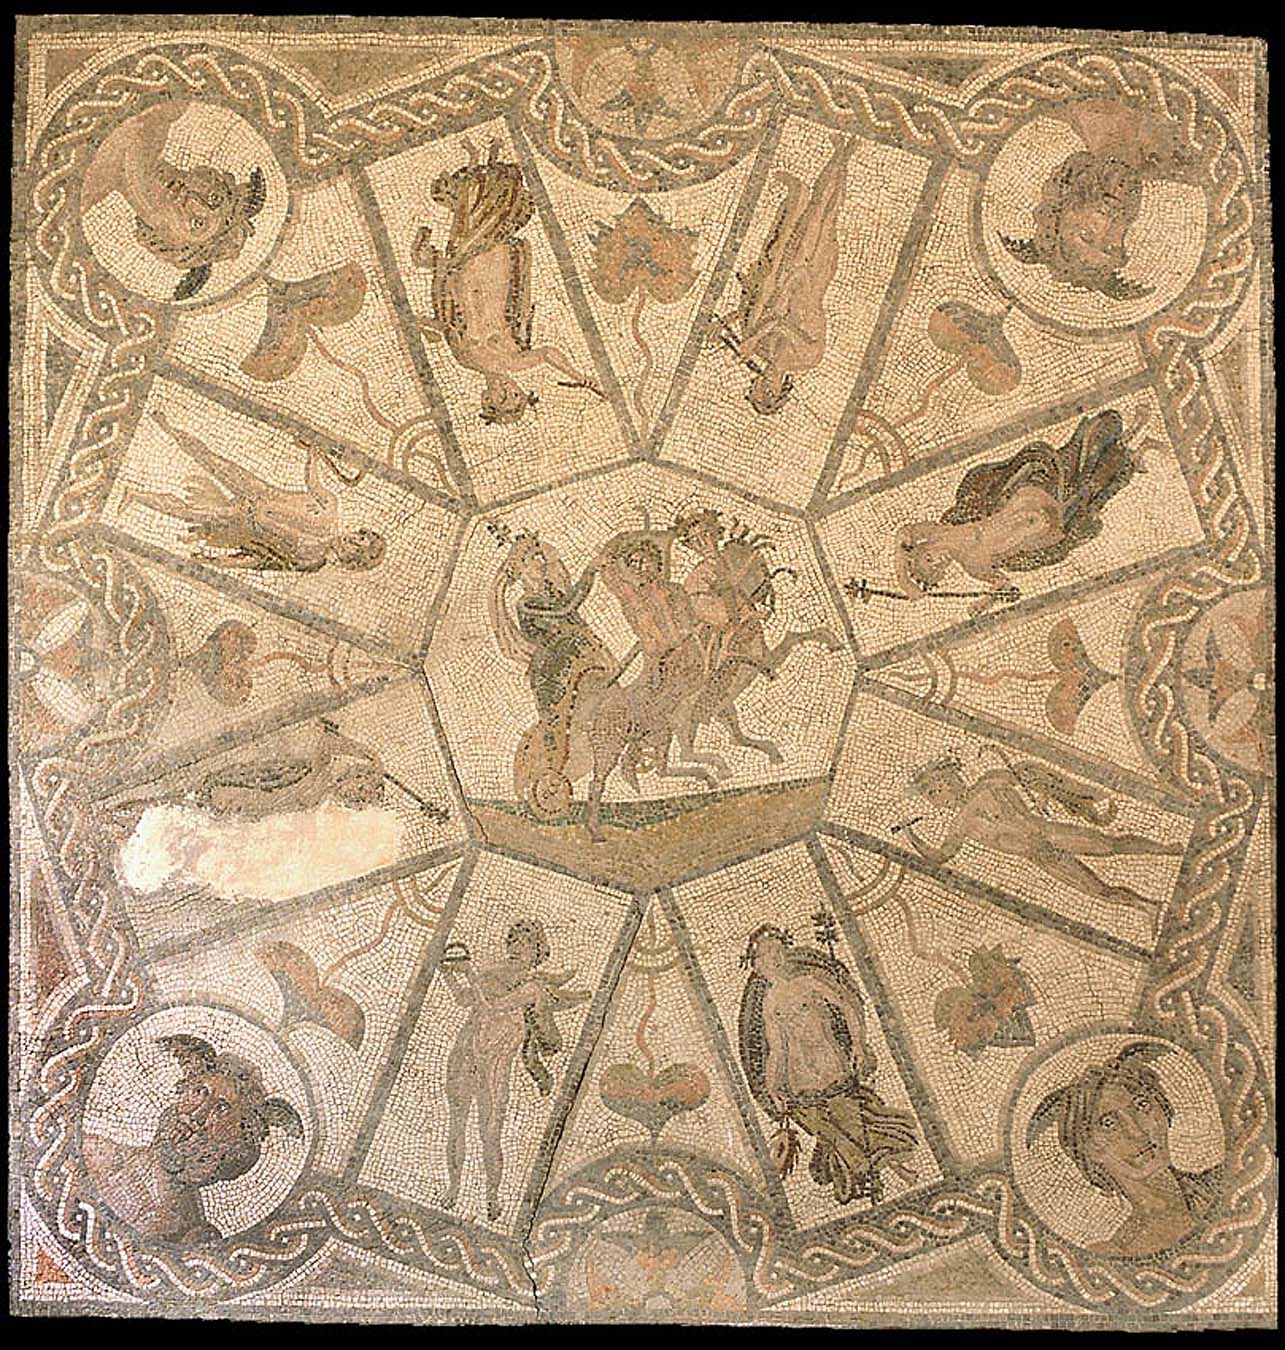 Mosaico del Cortejo Báquico